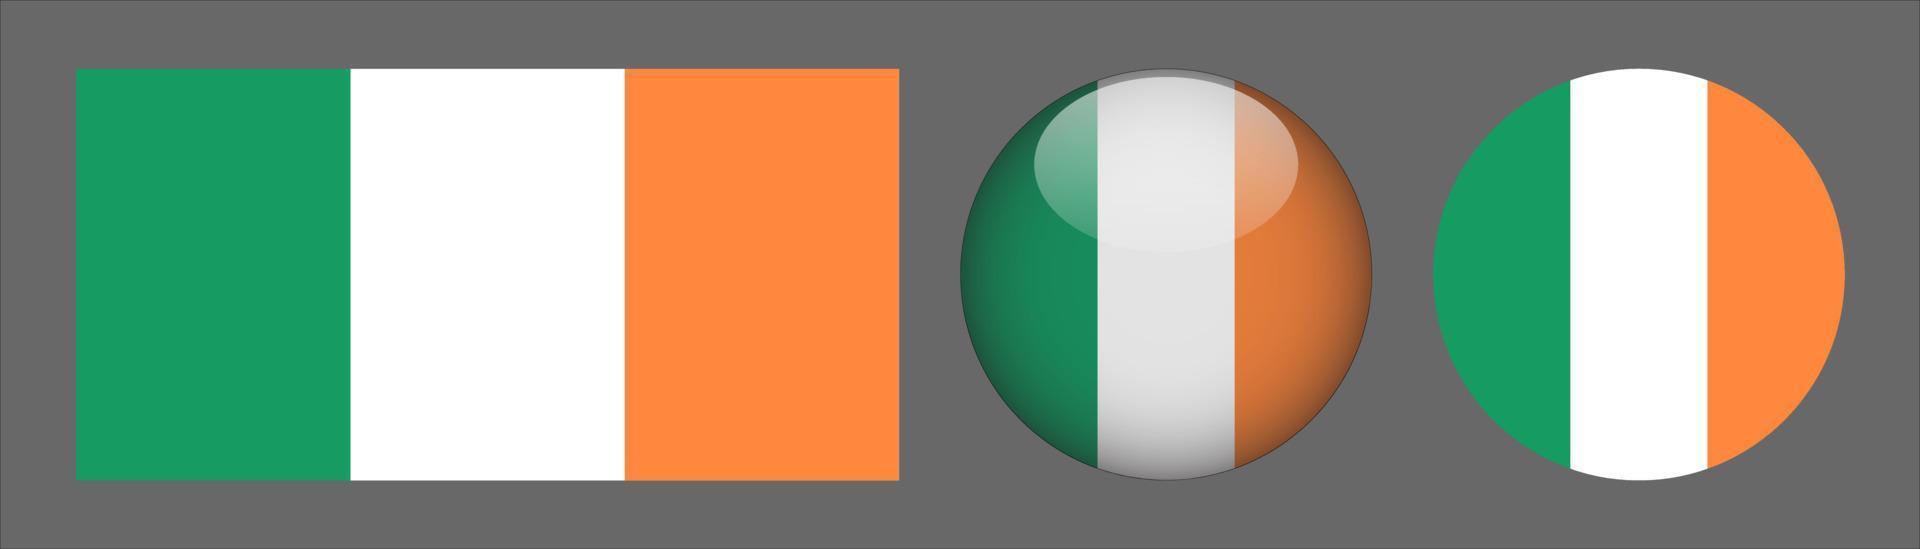 irland flag set collection, original storleksförhållande, 3d rundad och platt rundad vektor